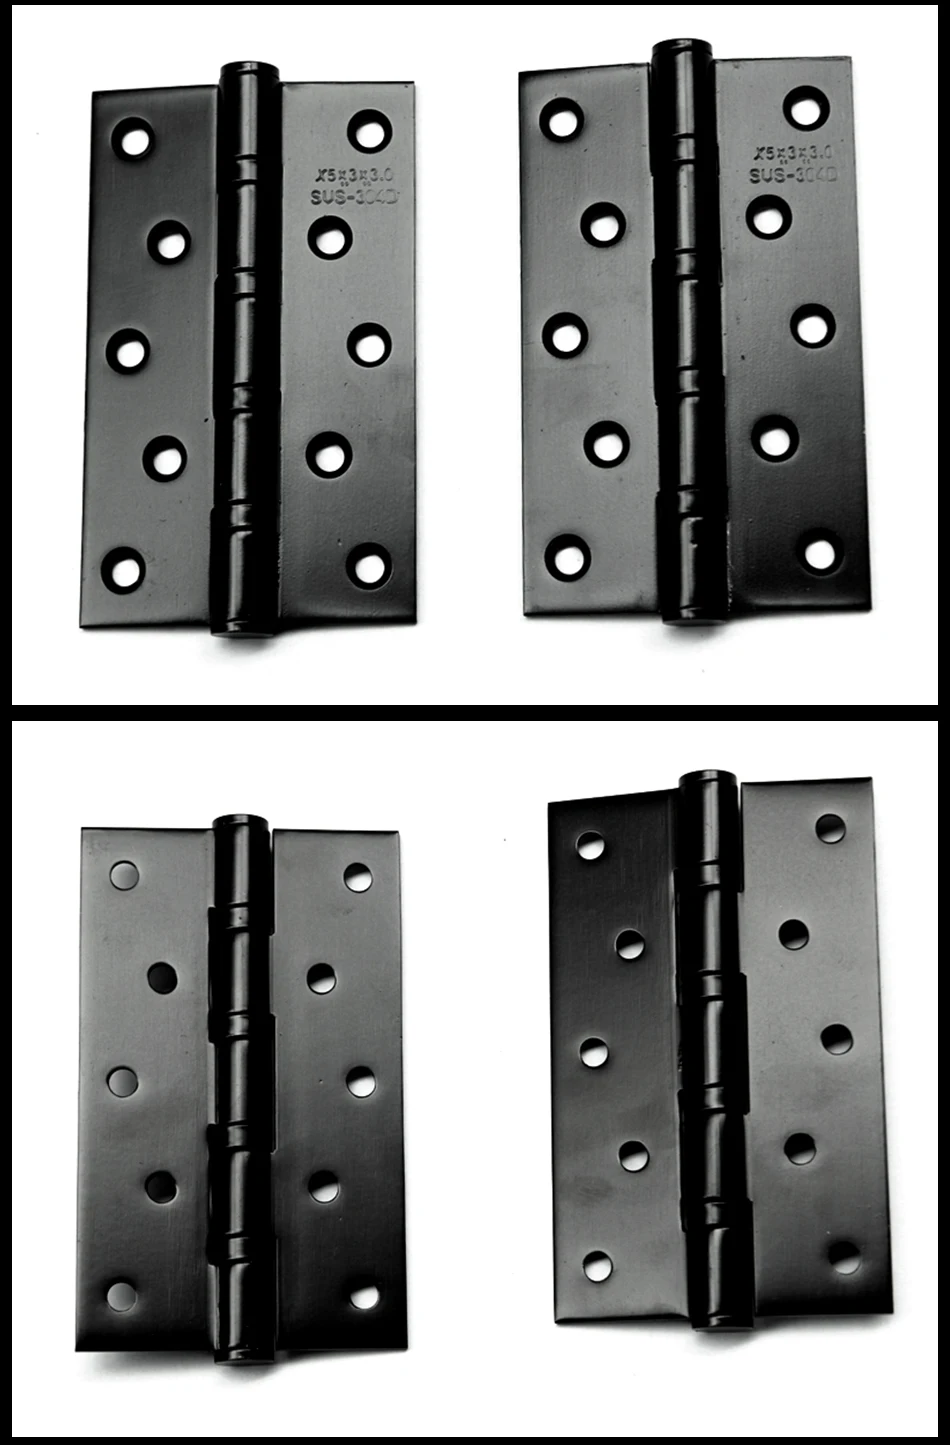 4 шт. петля для двери шкафа для мебельной фурнитуры Прочная нержавеющая сталь бесшумные петли Длина широко используется для дверных мебельных петель